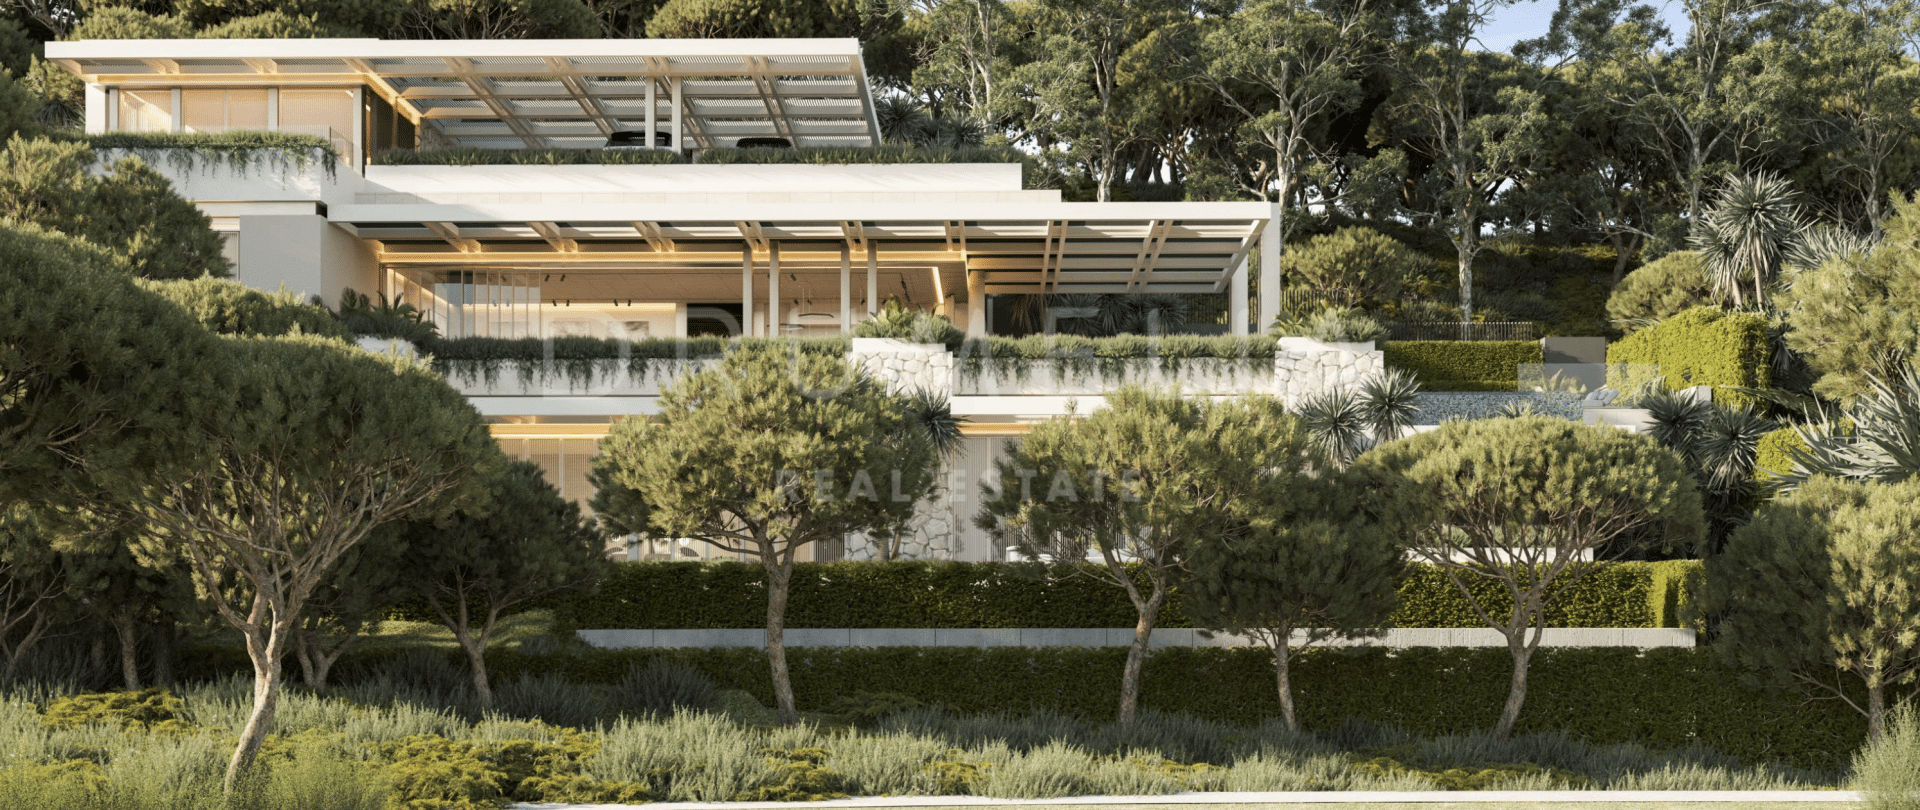 La Quinta 237 - Ausgezeichnetes Grundstück mit Designerprojekt und Lizenz zum Bau eines modernen Hauses in La Reserva de la Quinta, Benahavis